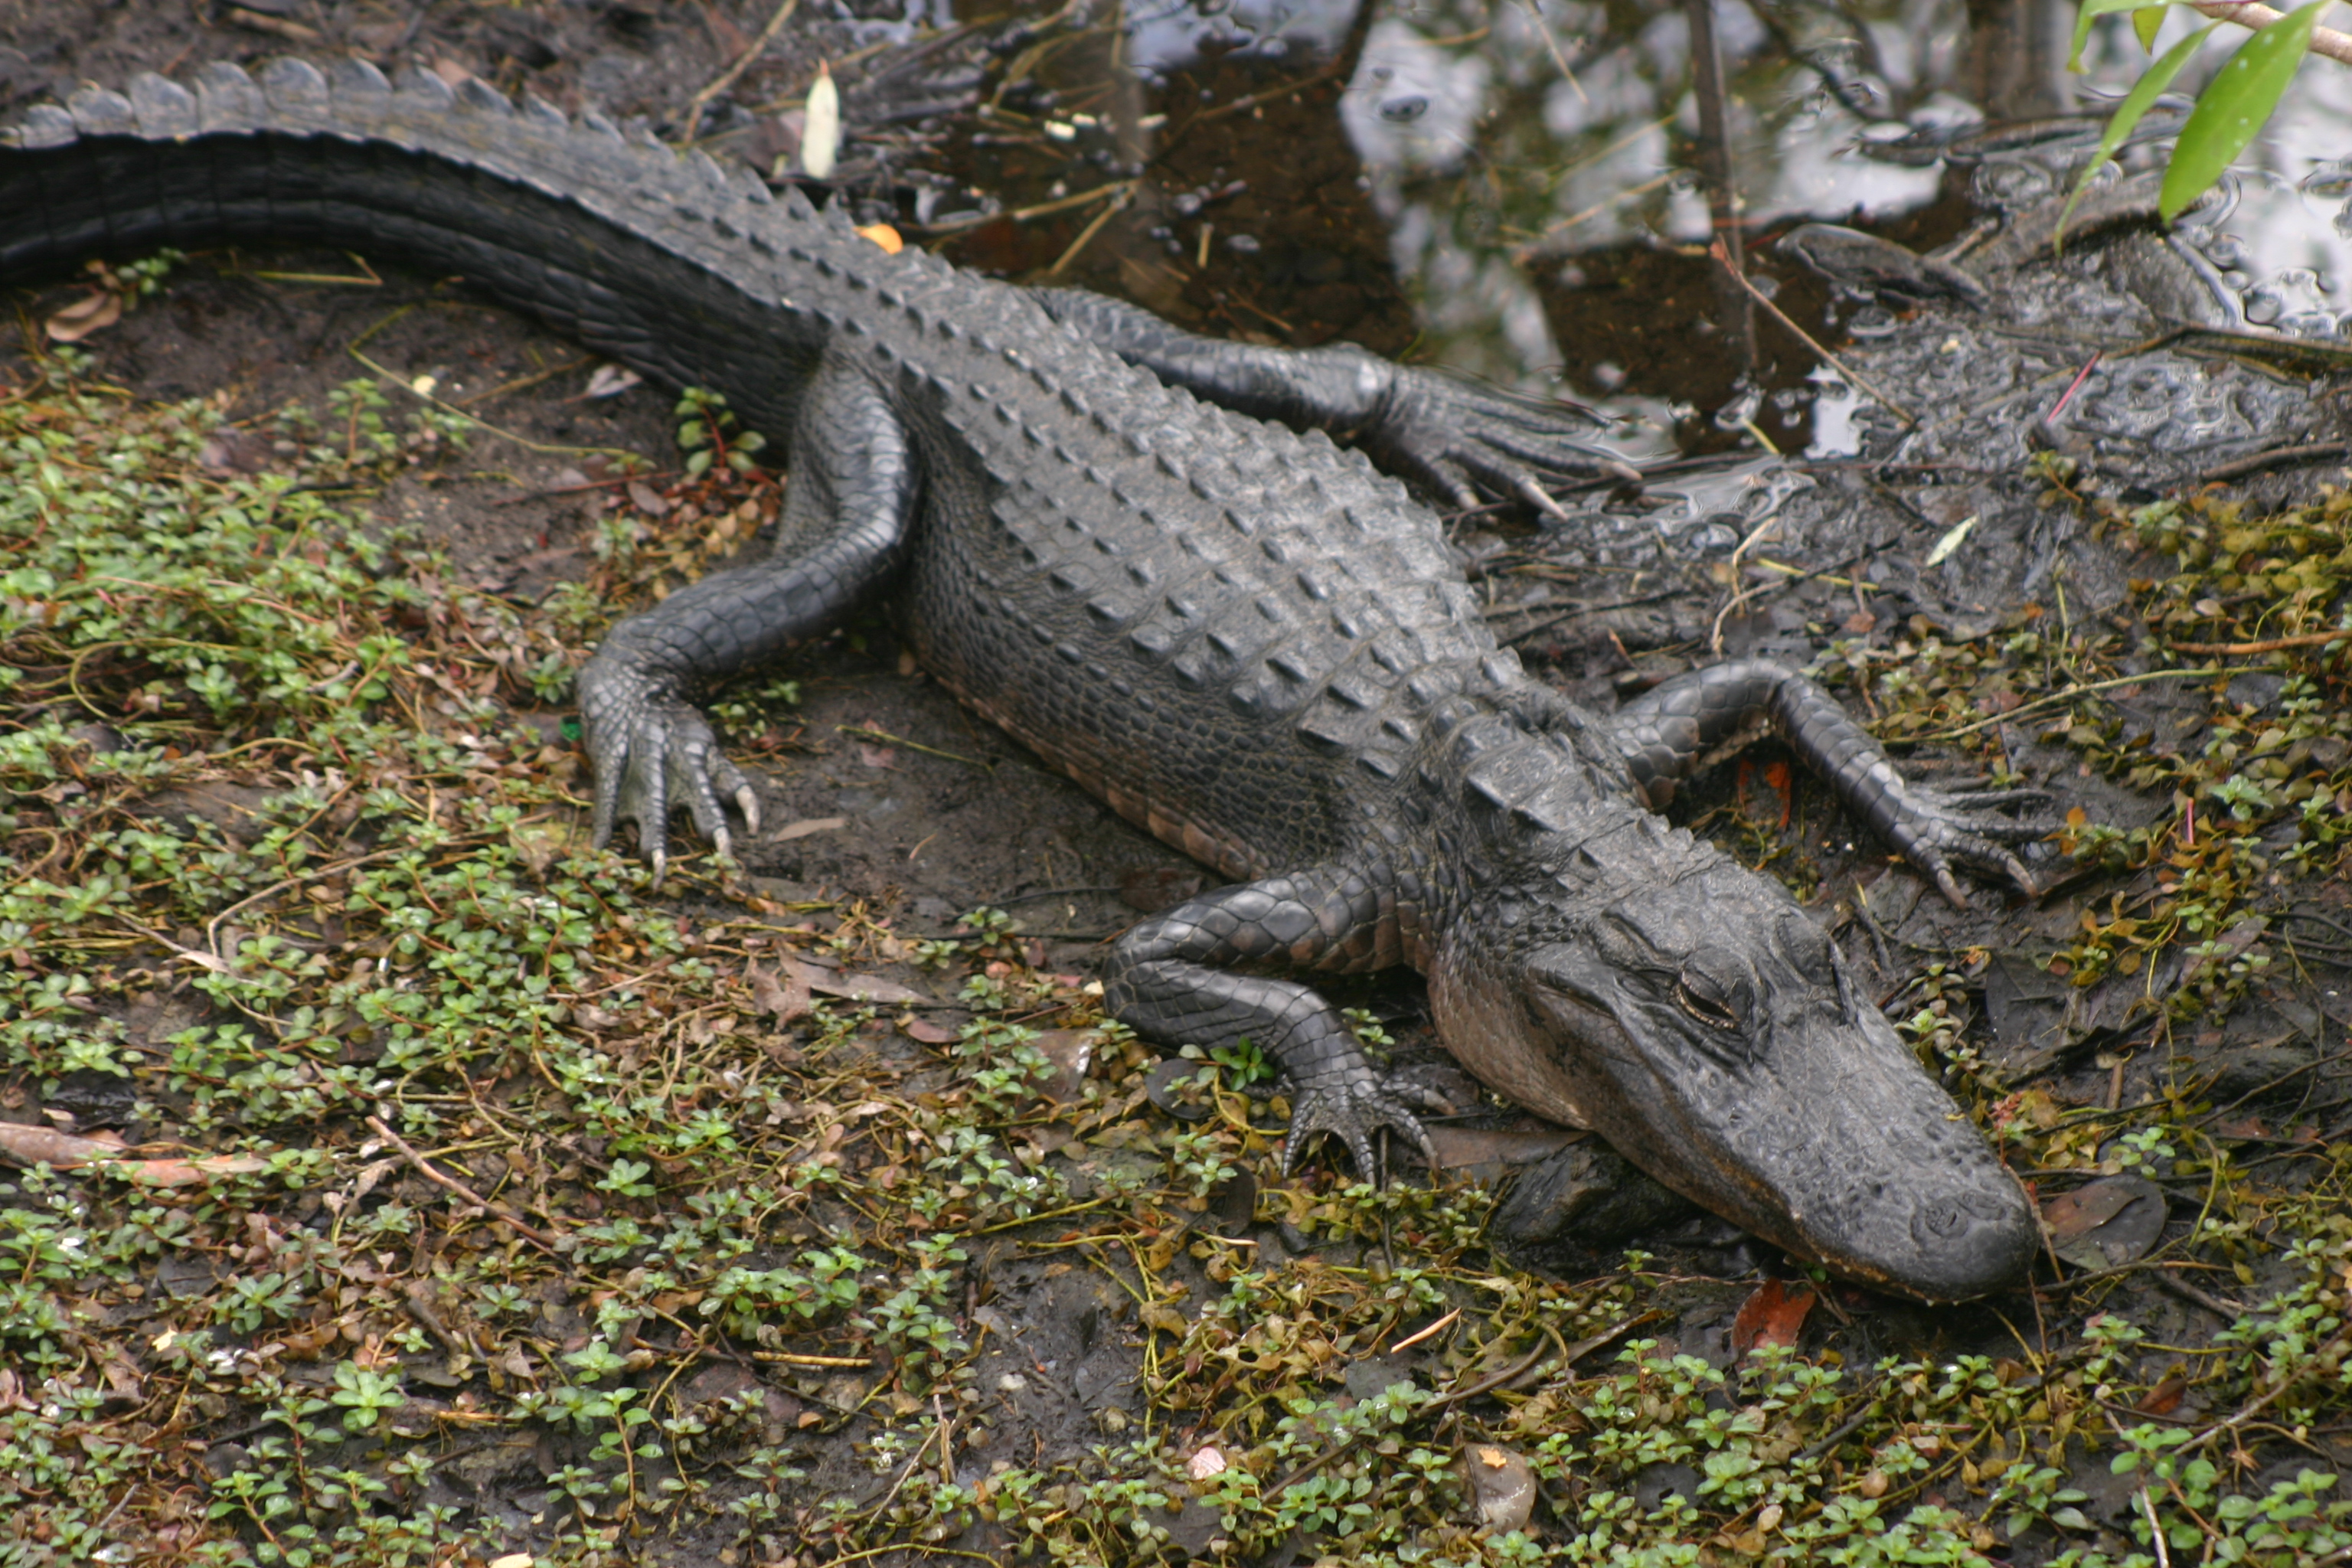 Alligator Nest Pictures